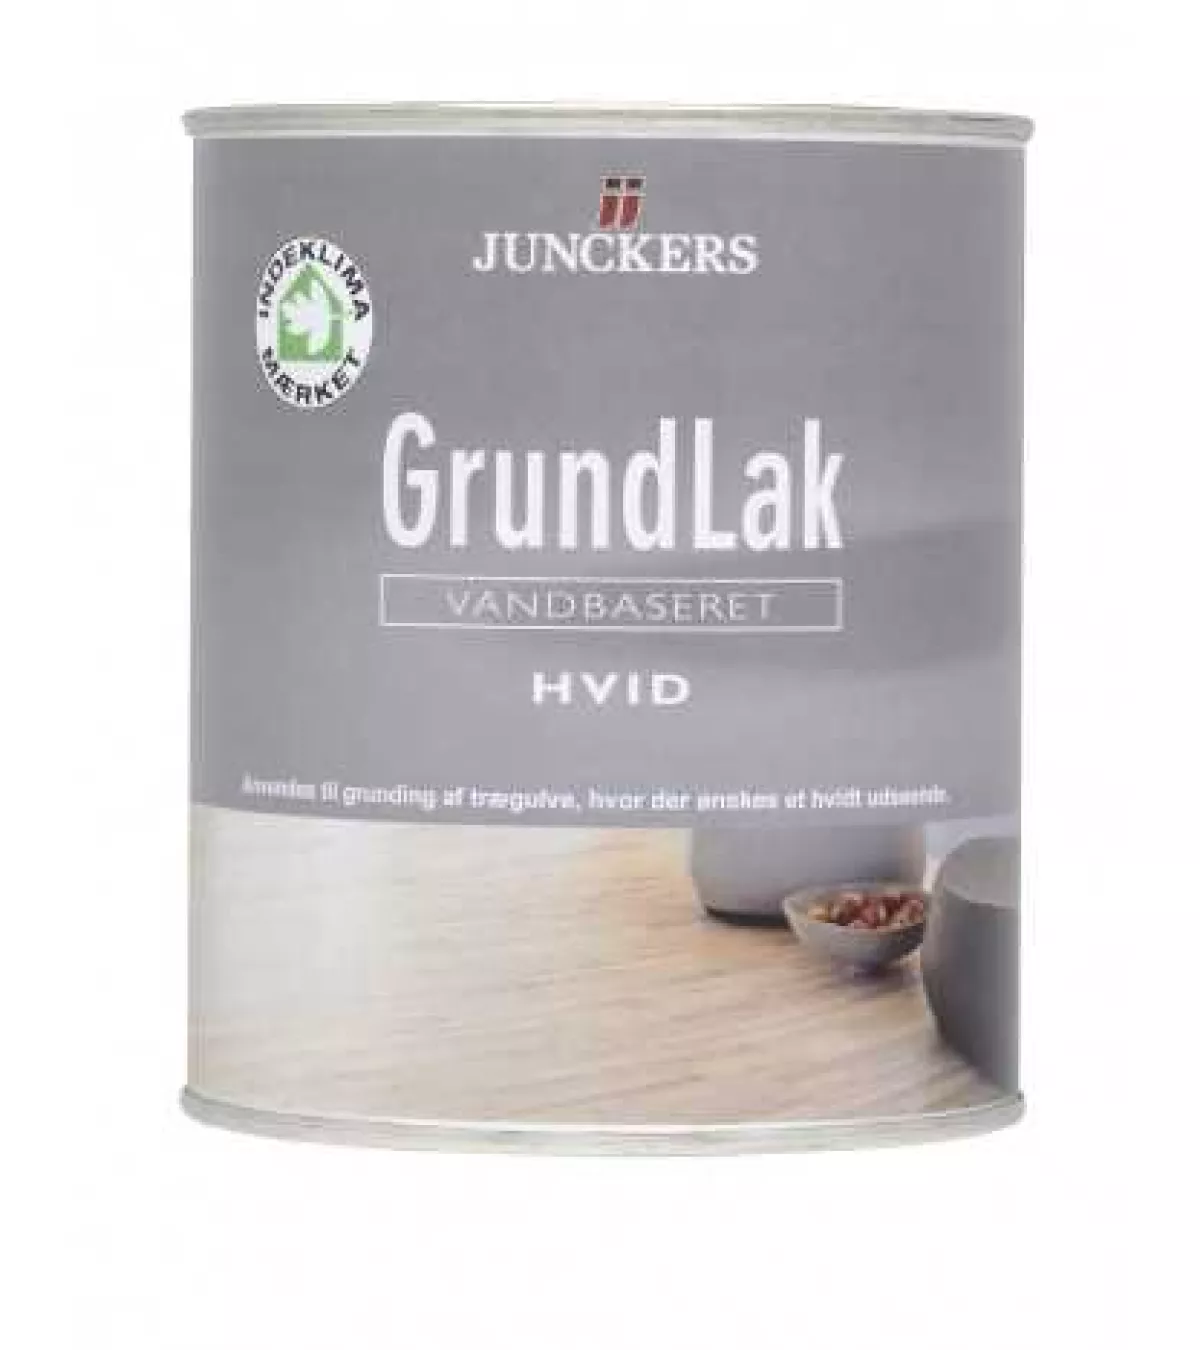 #1 - Junckers GrundLak vandbaseret 2,5 L Klar